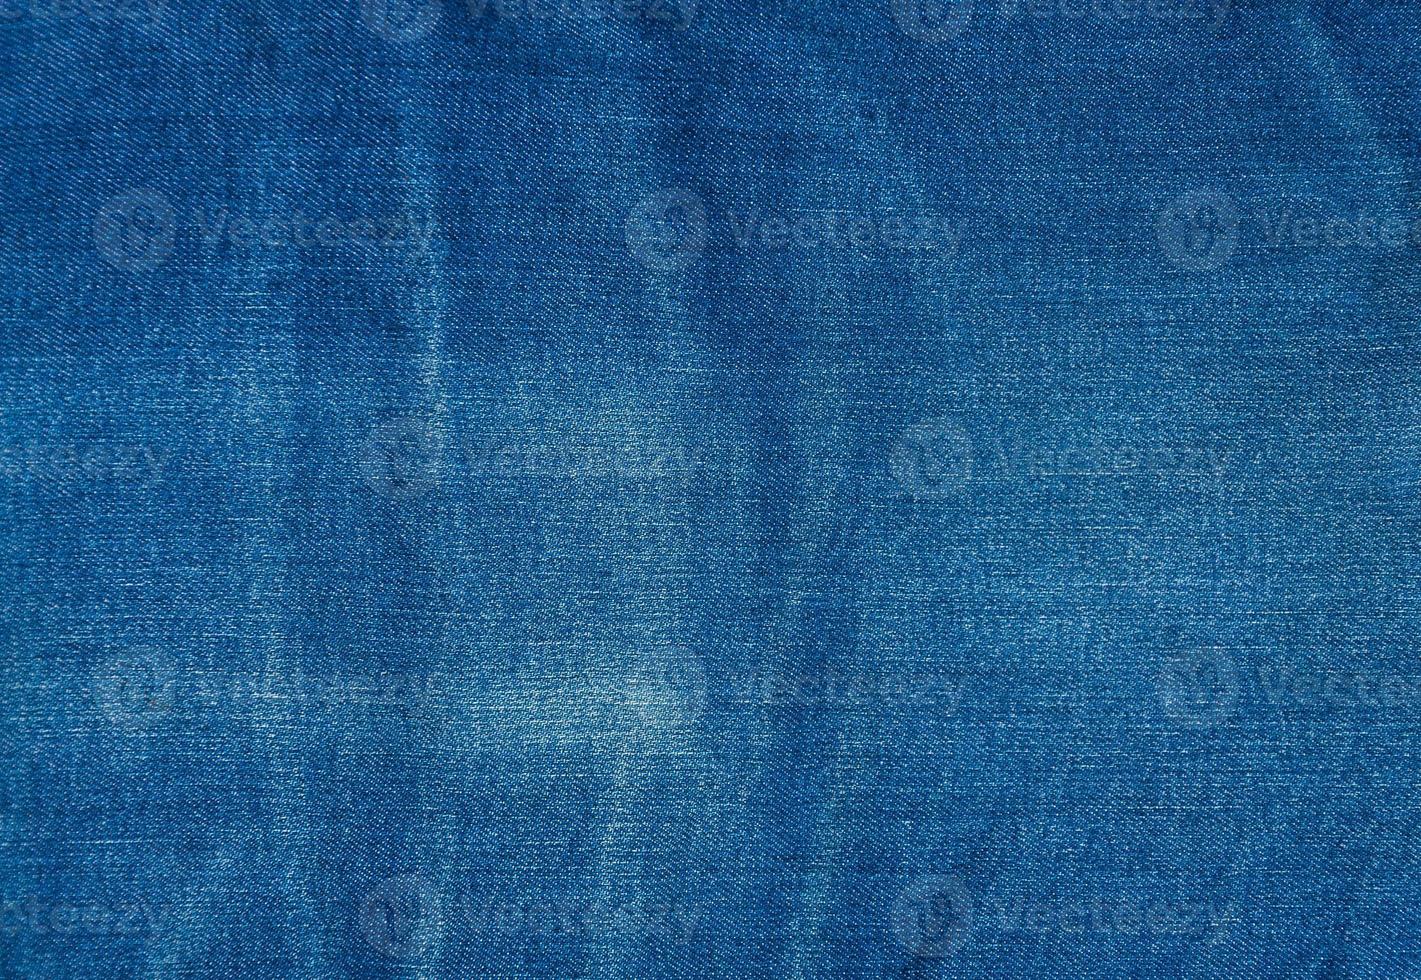 blauer Jeanshintergrund, blaue Denimjeansbeschaffenheit, Jeanshintergrund foto